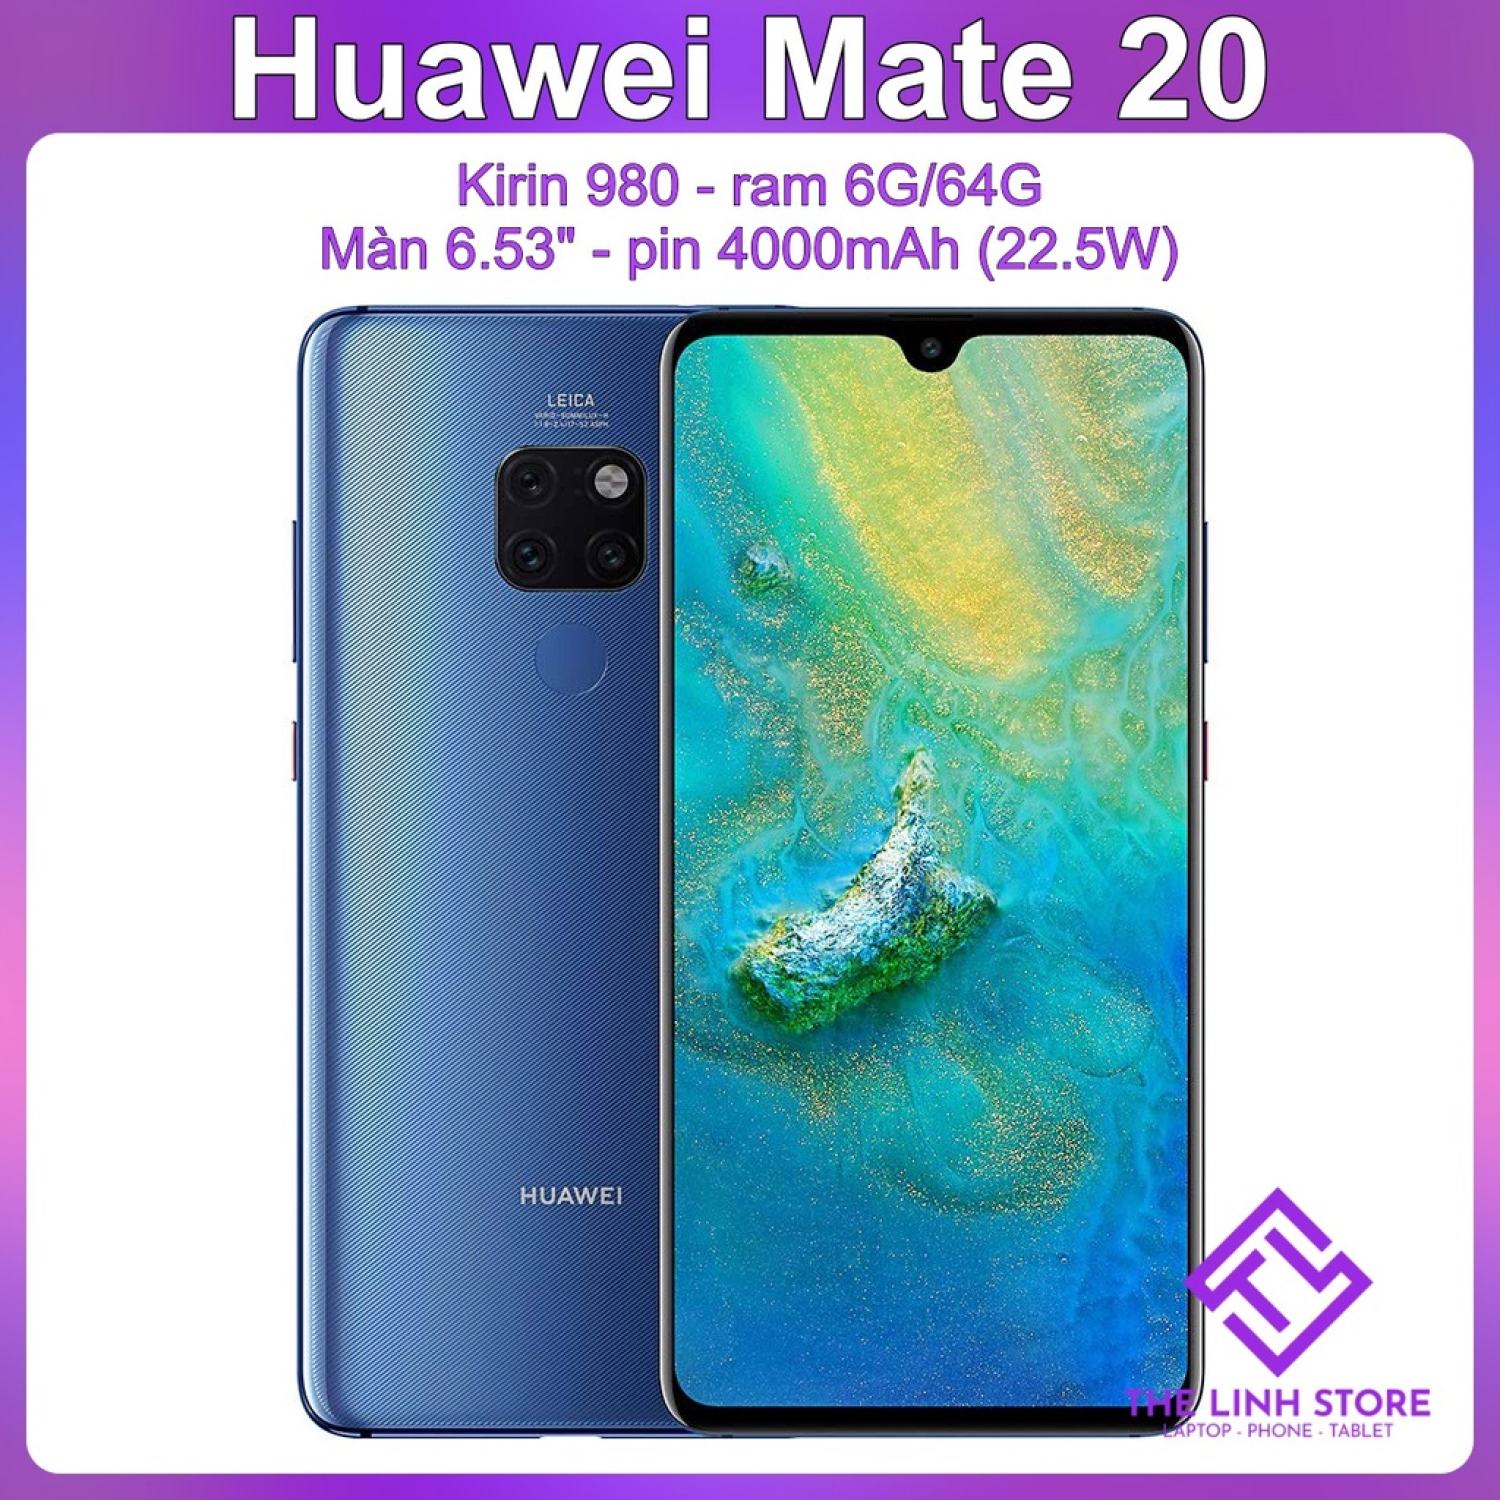 Điện thoại Huawei Mate 20 màn 6.53 inch - Kirin 980 ram 6G